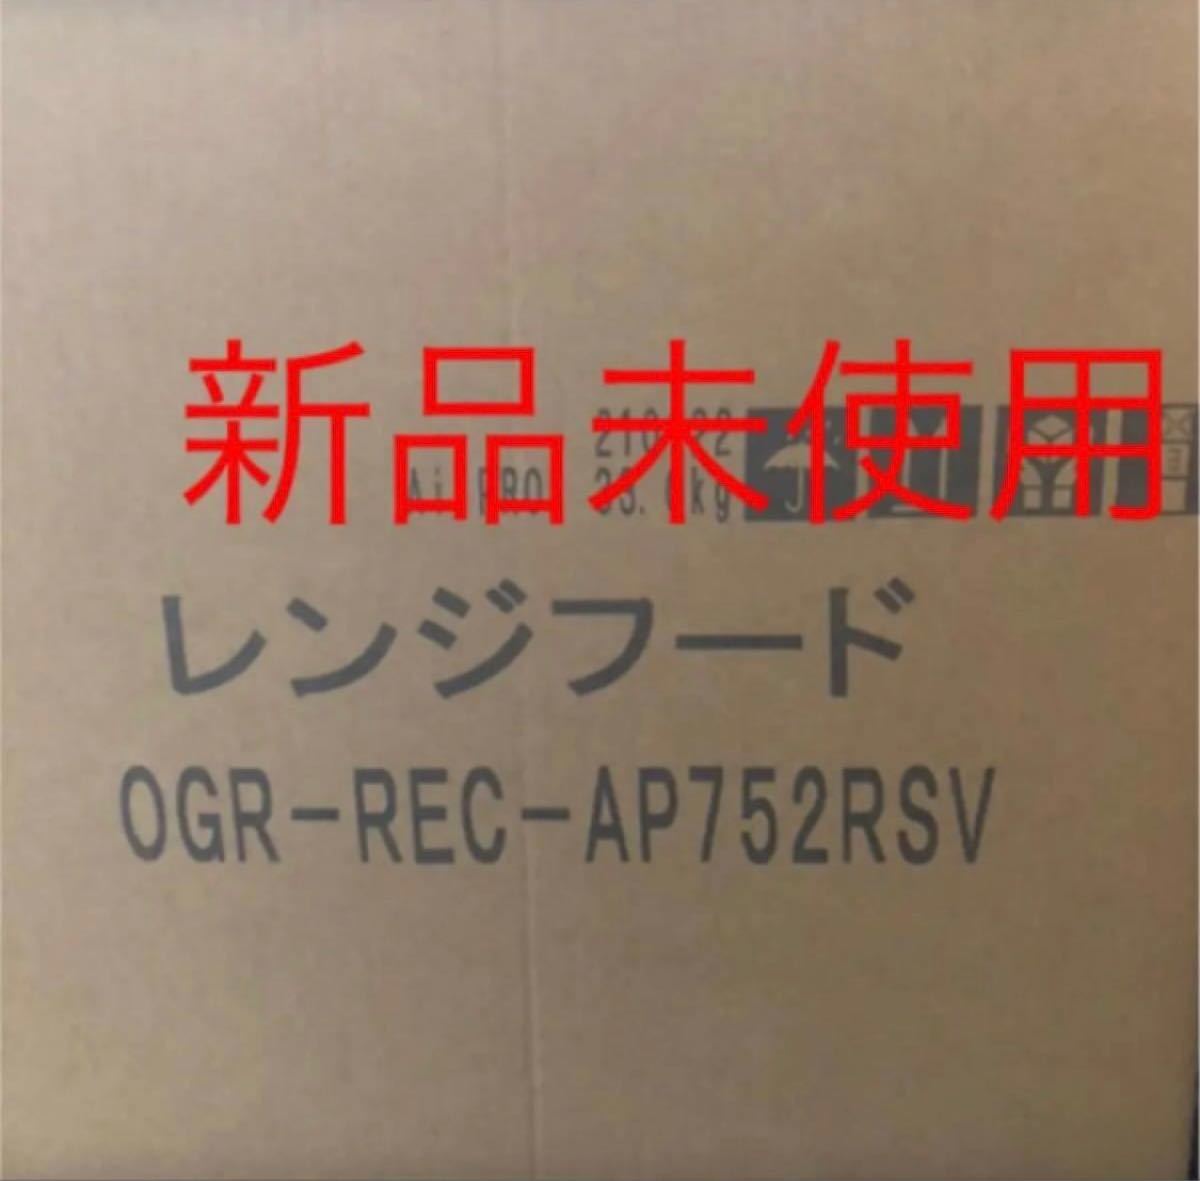 【値下げ】リンナイ製OGR-REC-AP752SV新品未使用